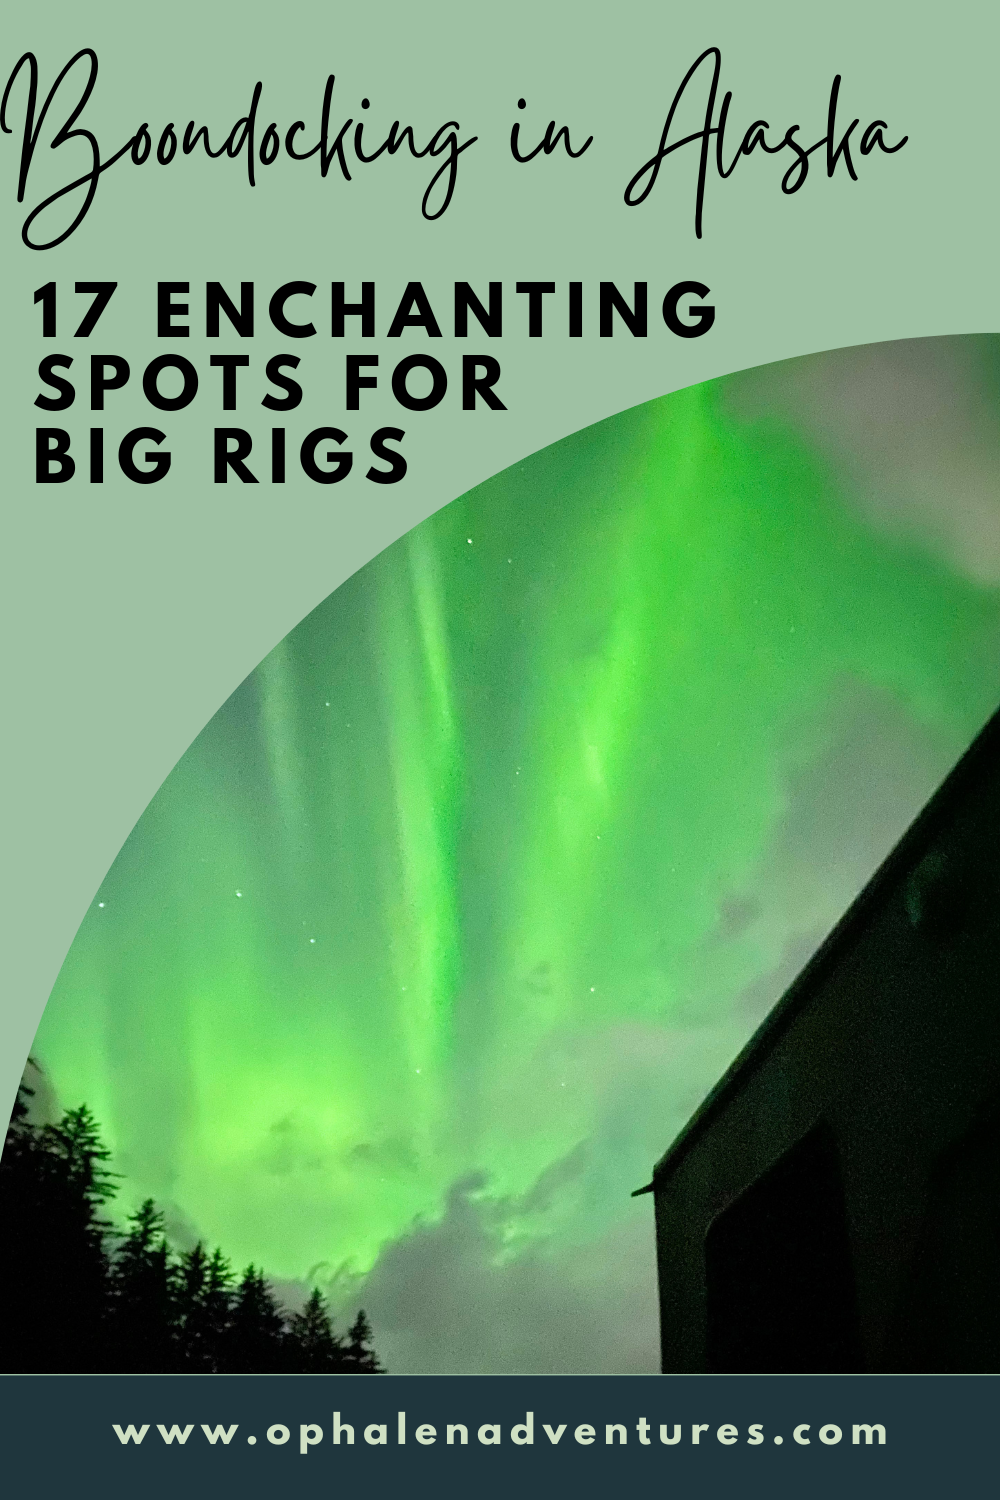 Boondocking in Alaska: 17 Enchanting Spots for Big Rigs